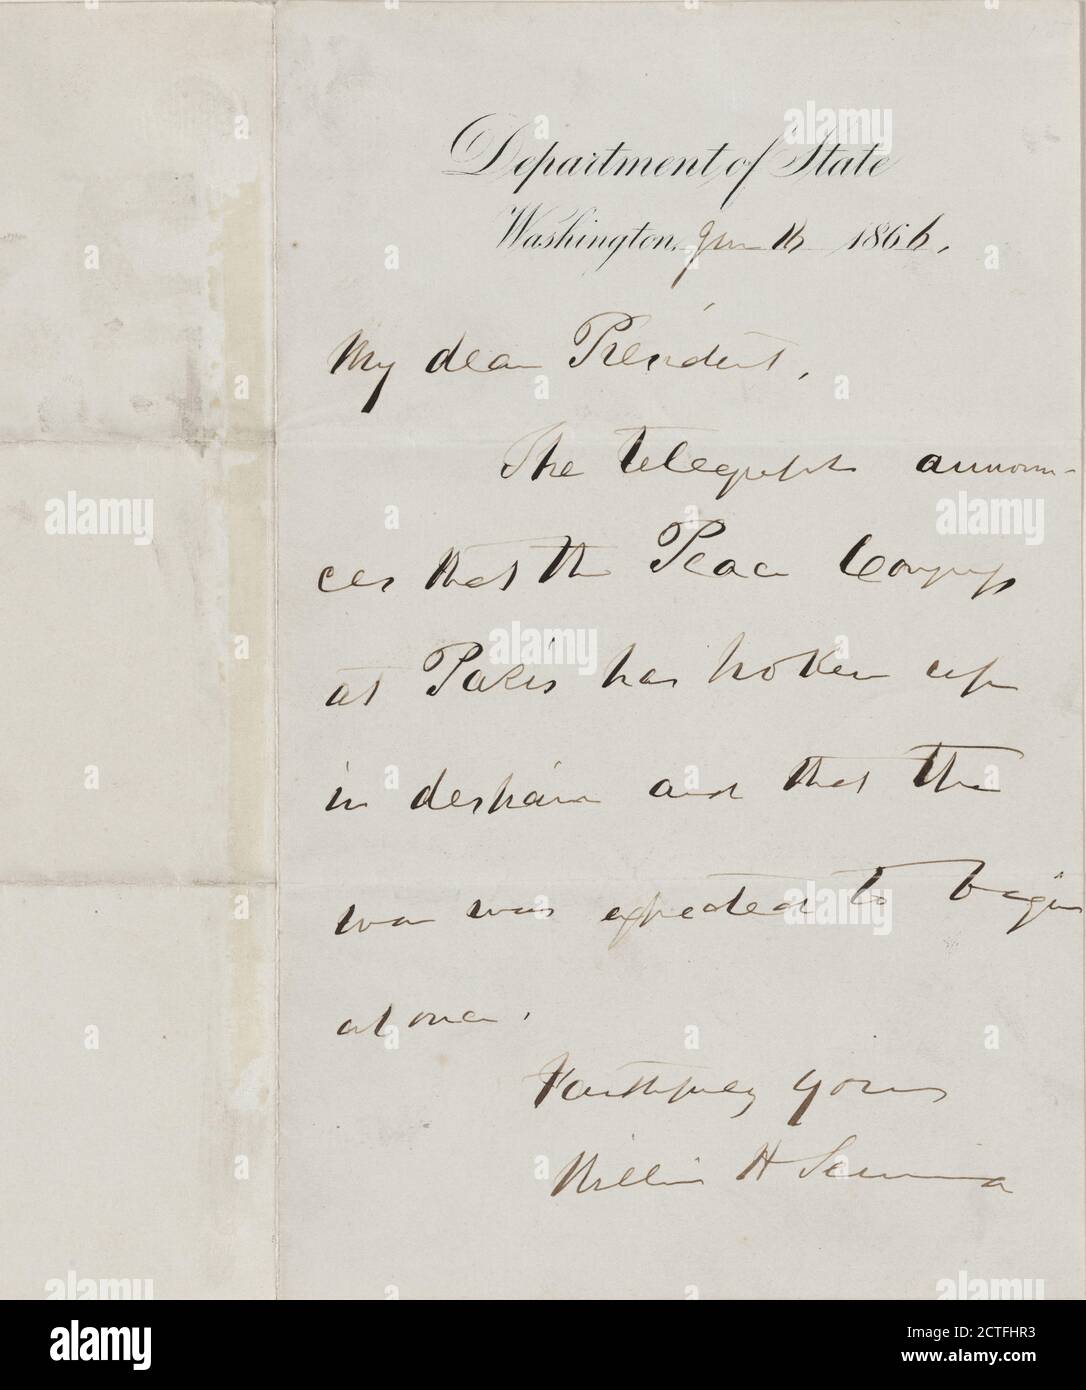 Seward, William H. A.L.S. au président Andrew Johnson, texte, correspondance, 1866, Seward, William Henry, 1801-1872 Banque D'Images